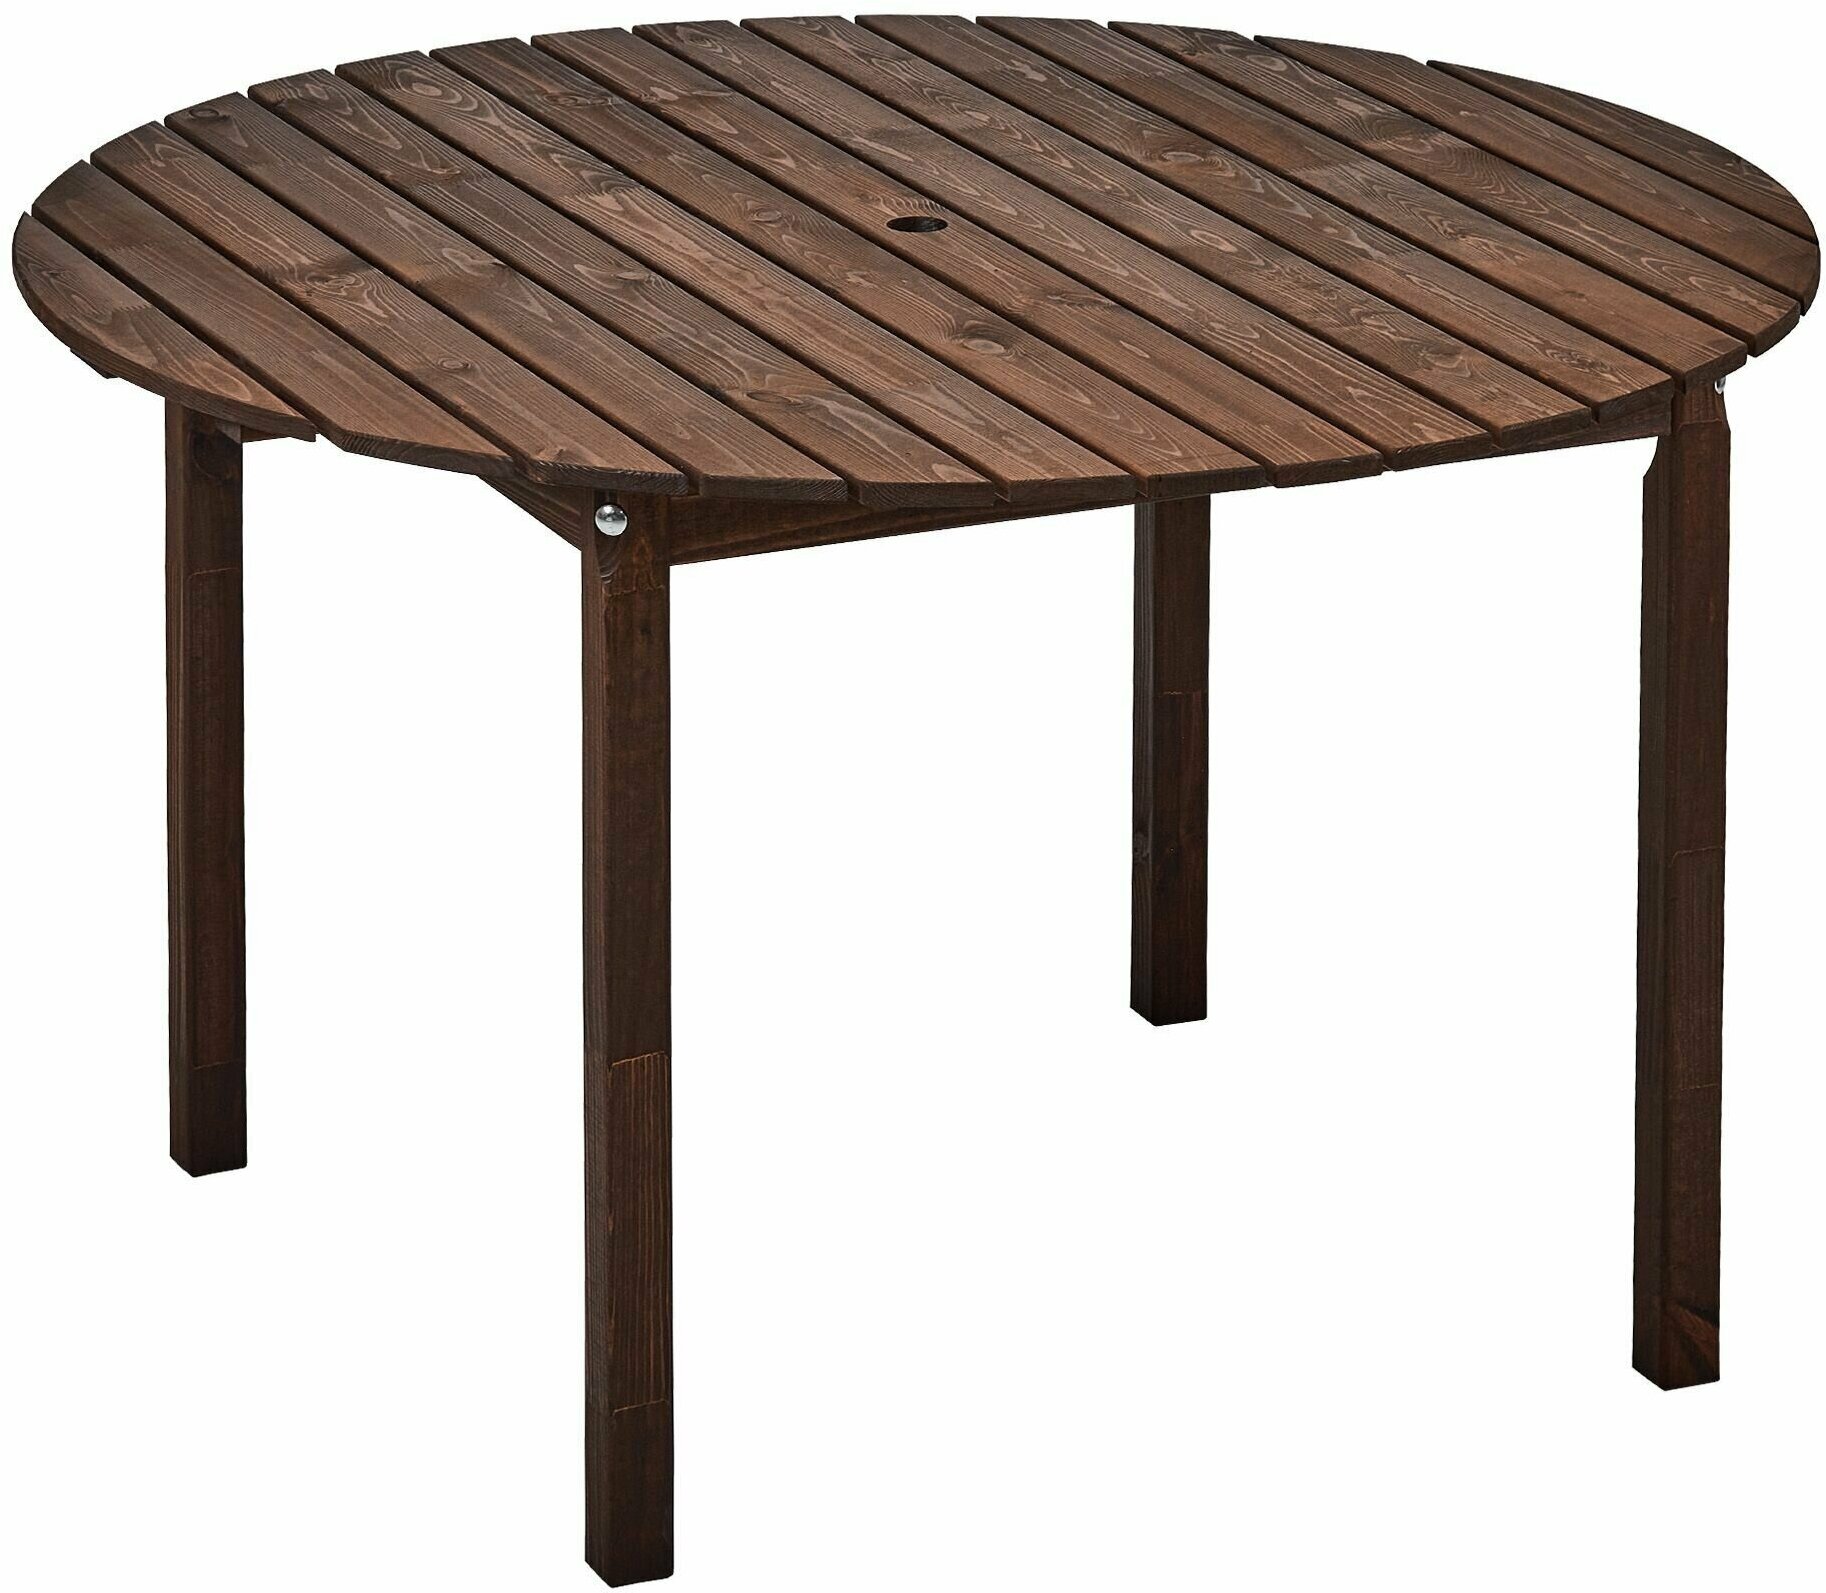 Садовый деревянный круглый обеденный стол, 120*120см, Кингстон